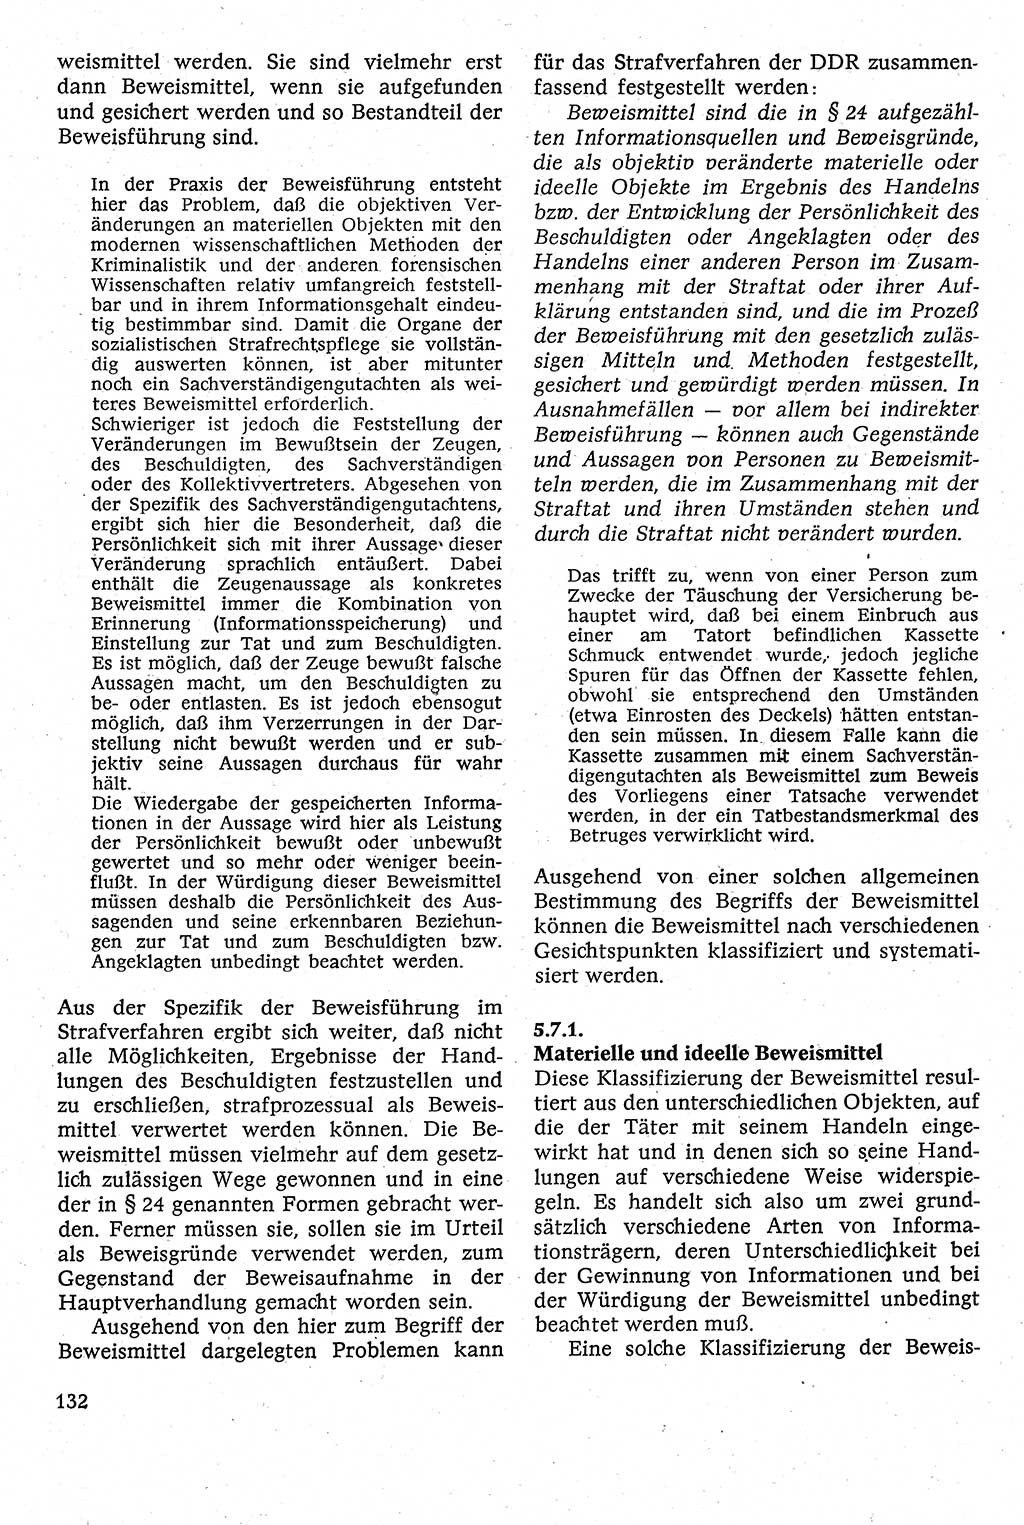 Strafverfahrensrecht [Deutsche Demokratische Republik (DDR)], Lehrbuch 1982, Seite 132 (Strafverf.-R. DDR Lb. 1982, S. 132)